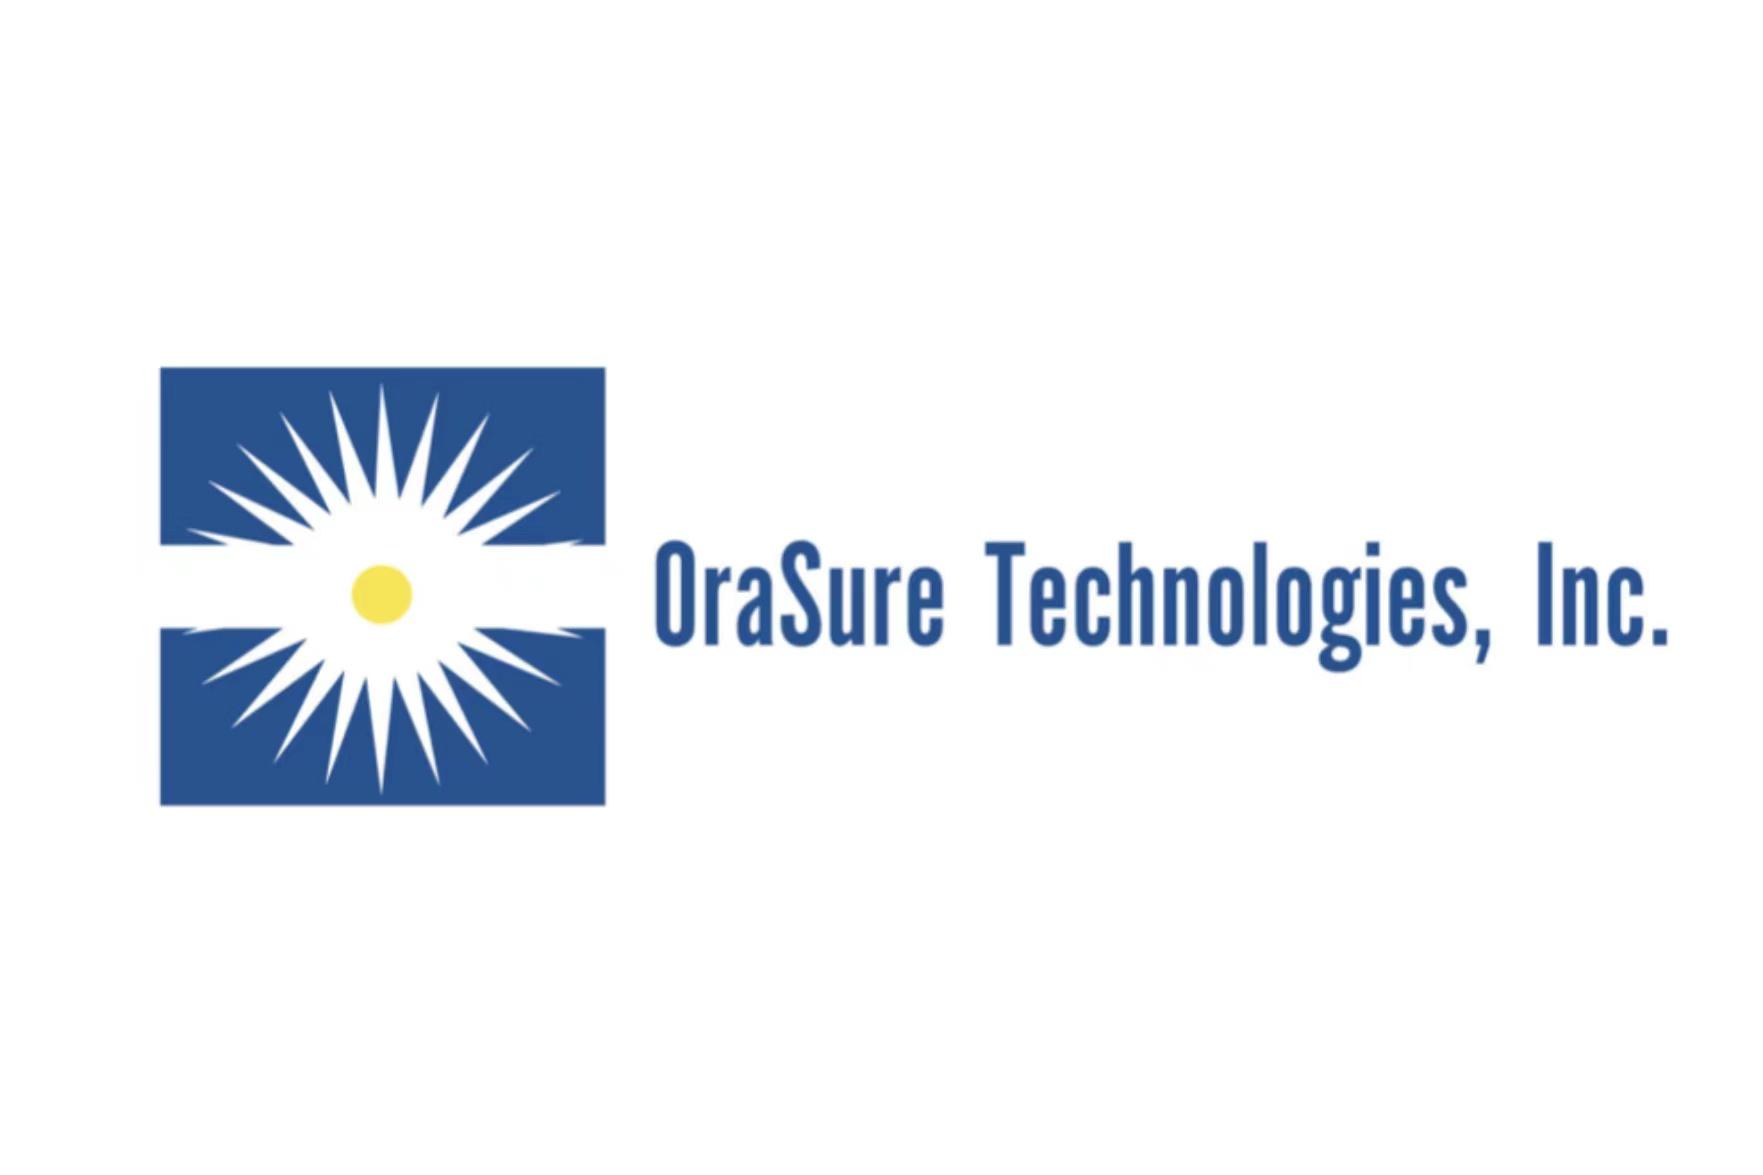 ORASURE REPORTS Q4 ‘23 REVENUE OF $75.9 MILLION